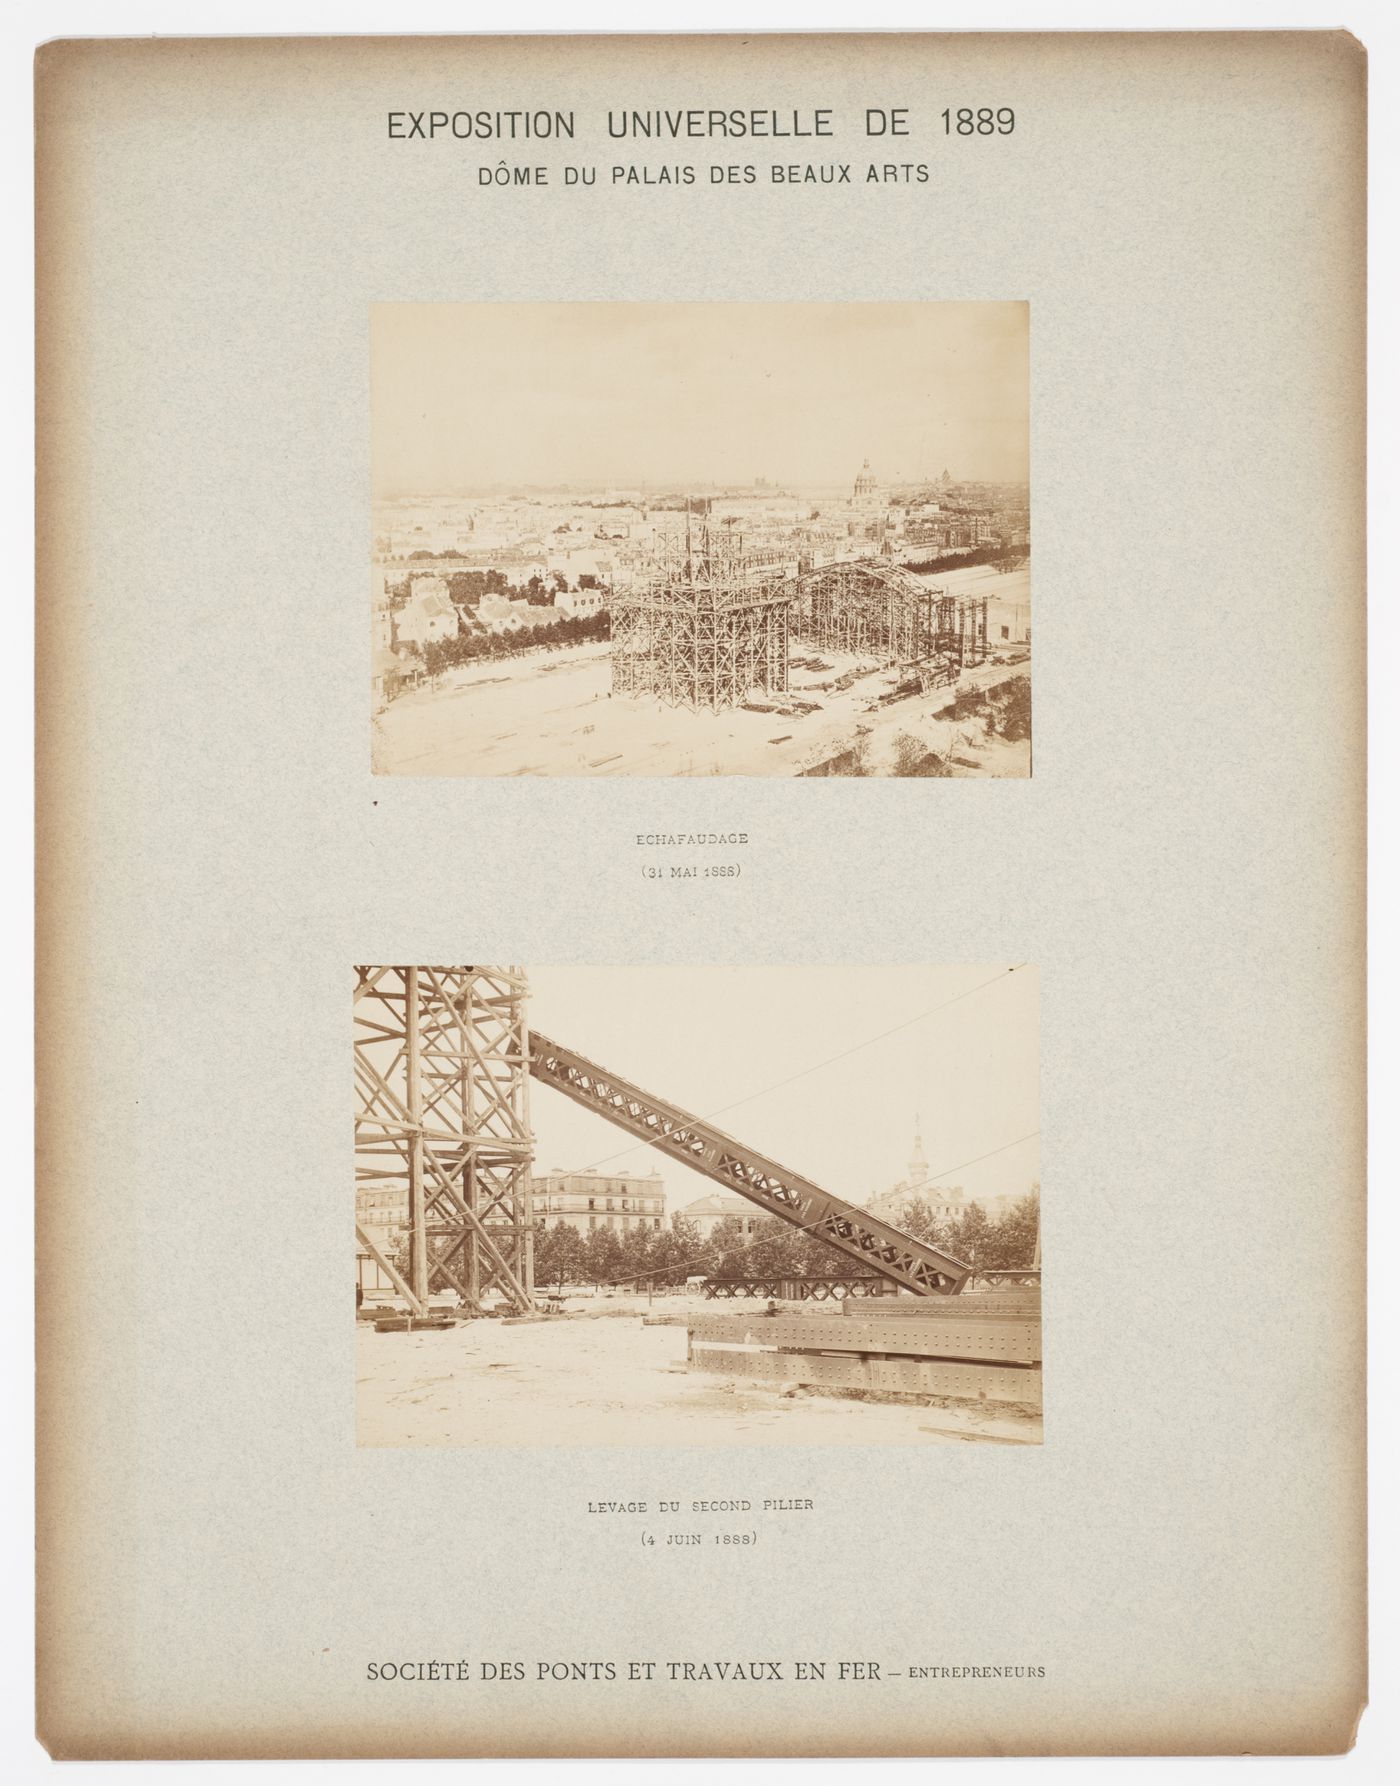 Views of the construction of the Dome du Palais des Beaux Arts, Exposition Universelle de 1889, Paris, France